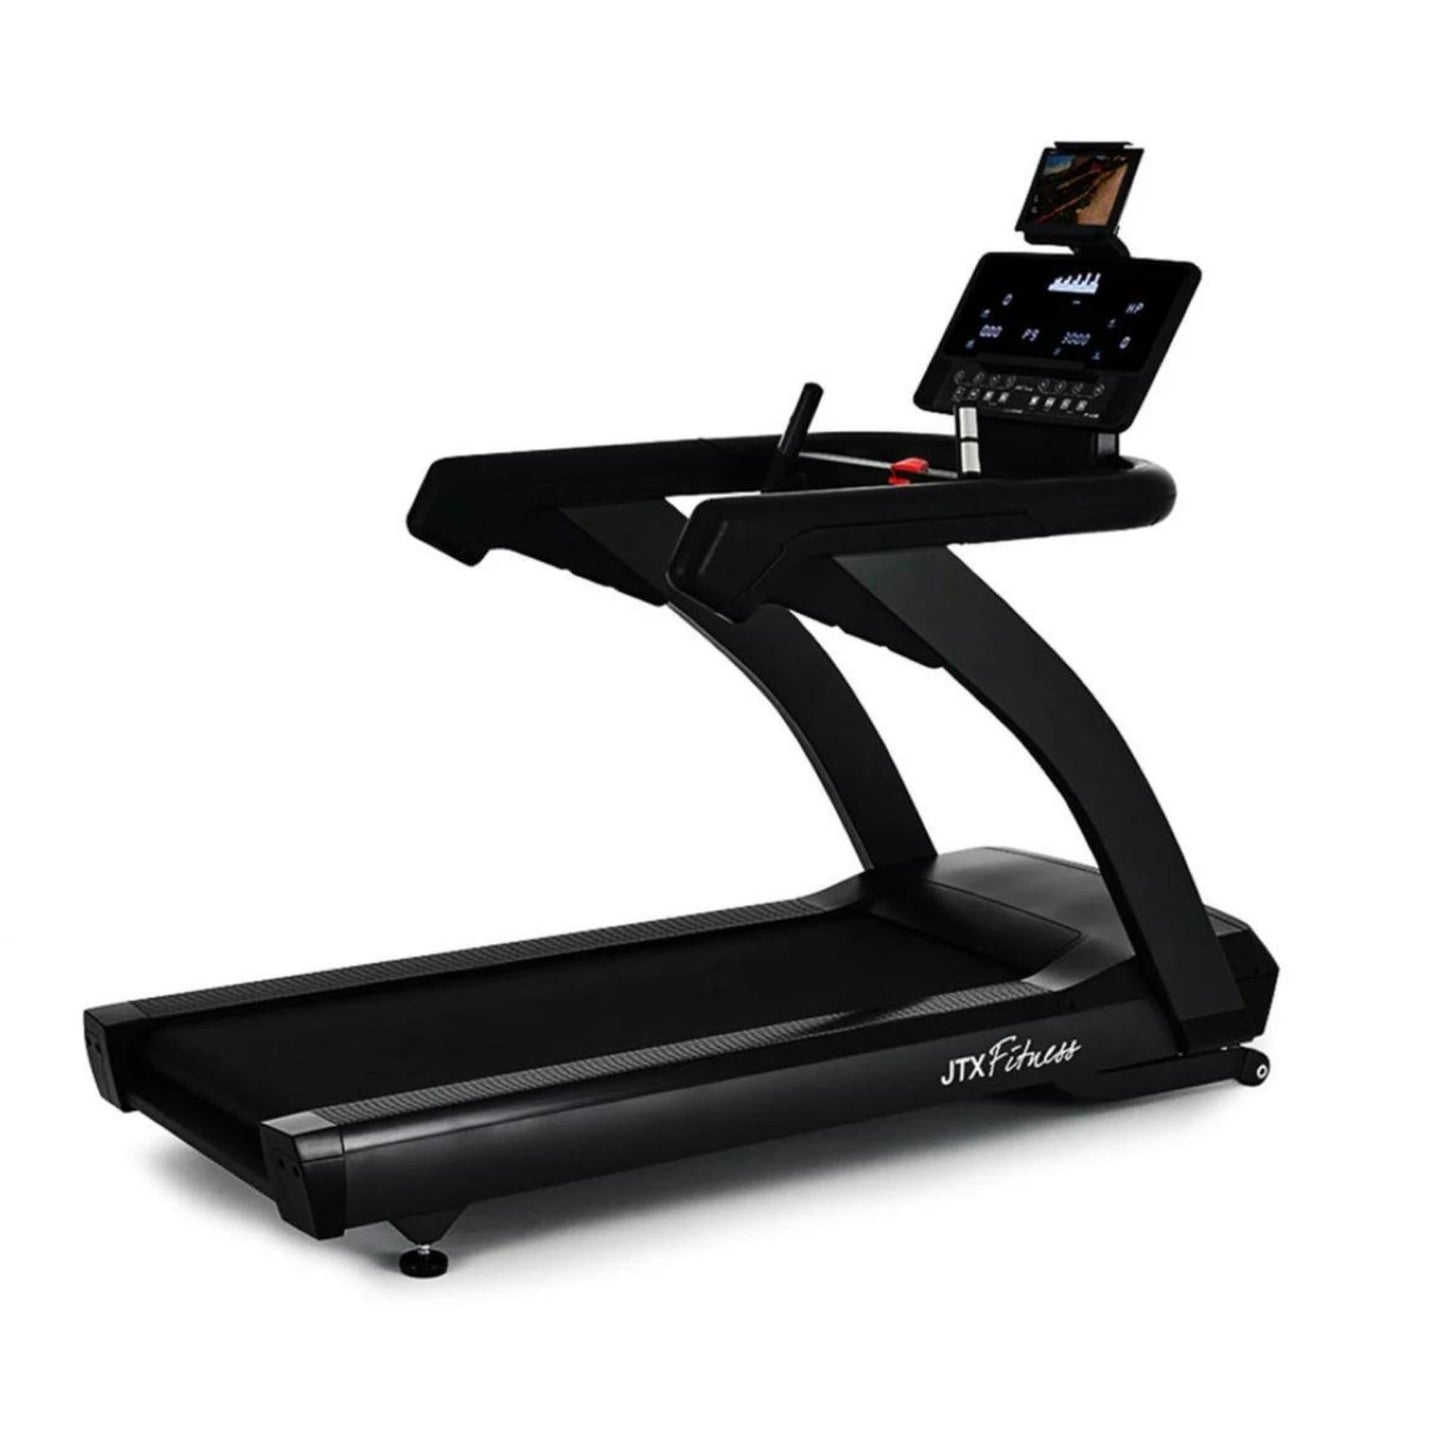 JTX club pro treadmill review